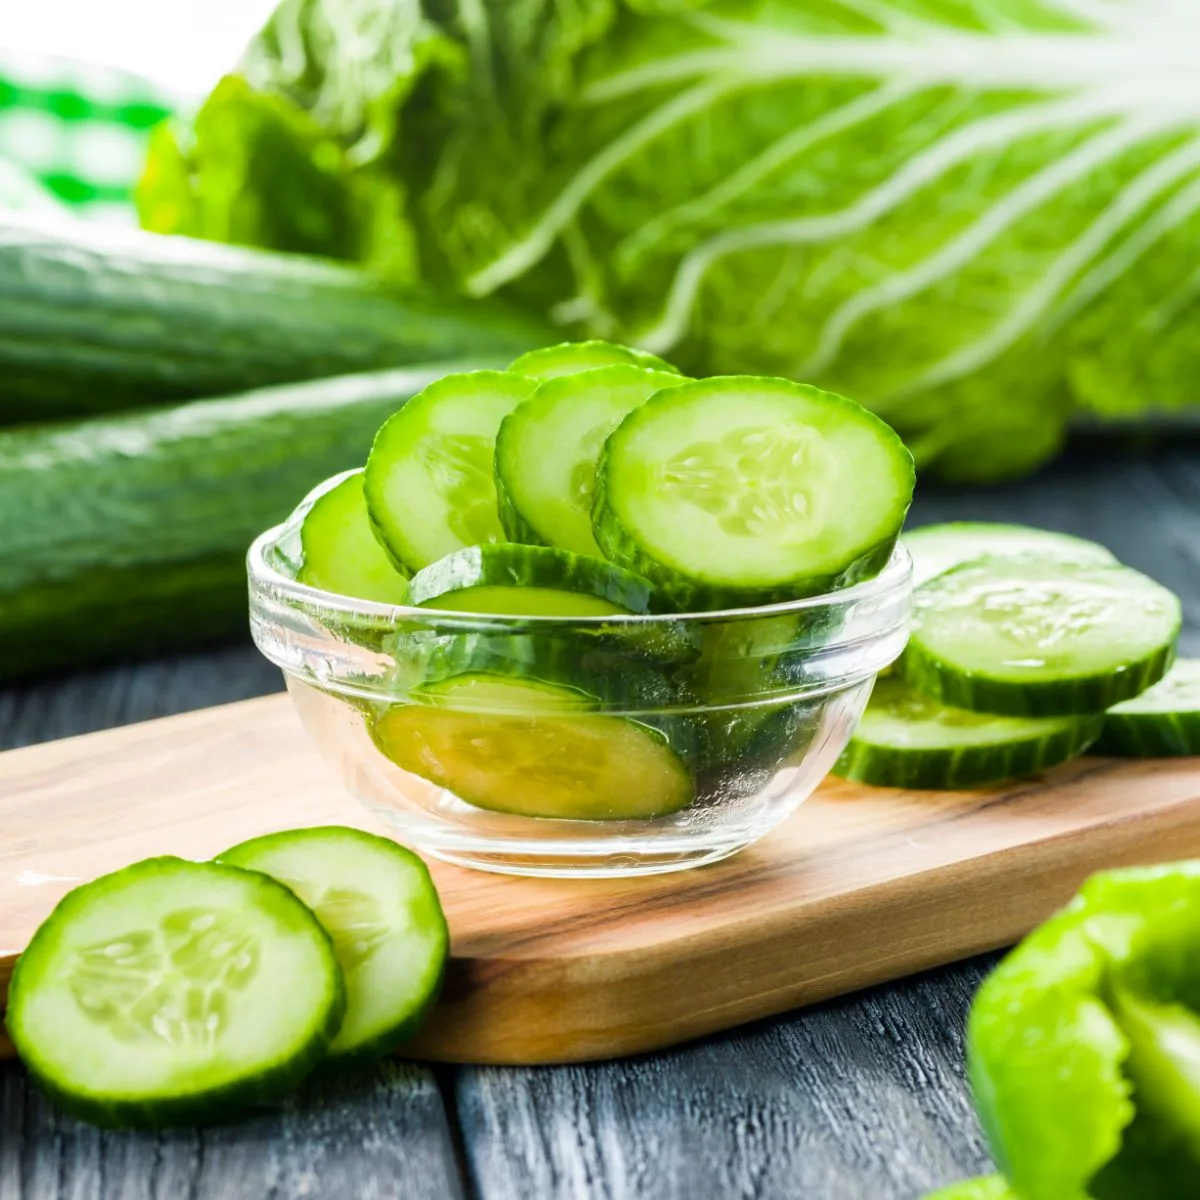 cucumber seeds benefits